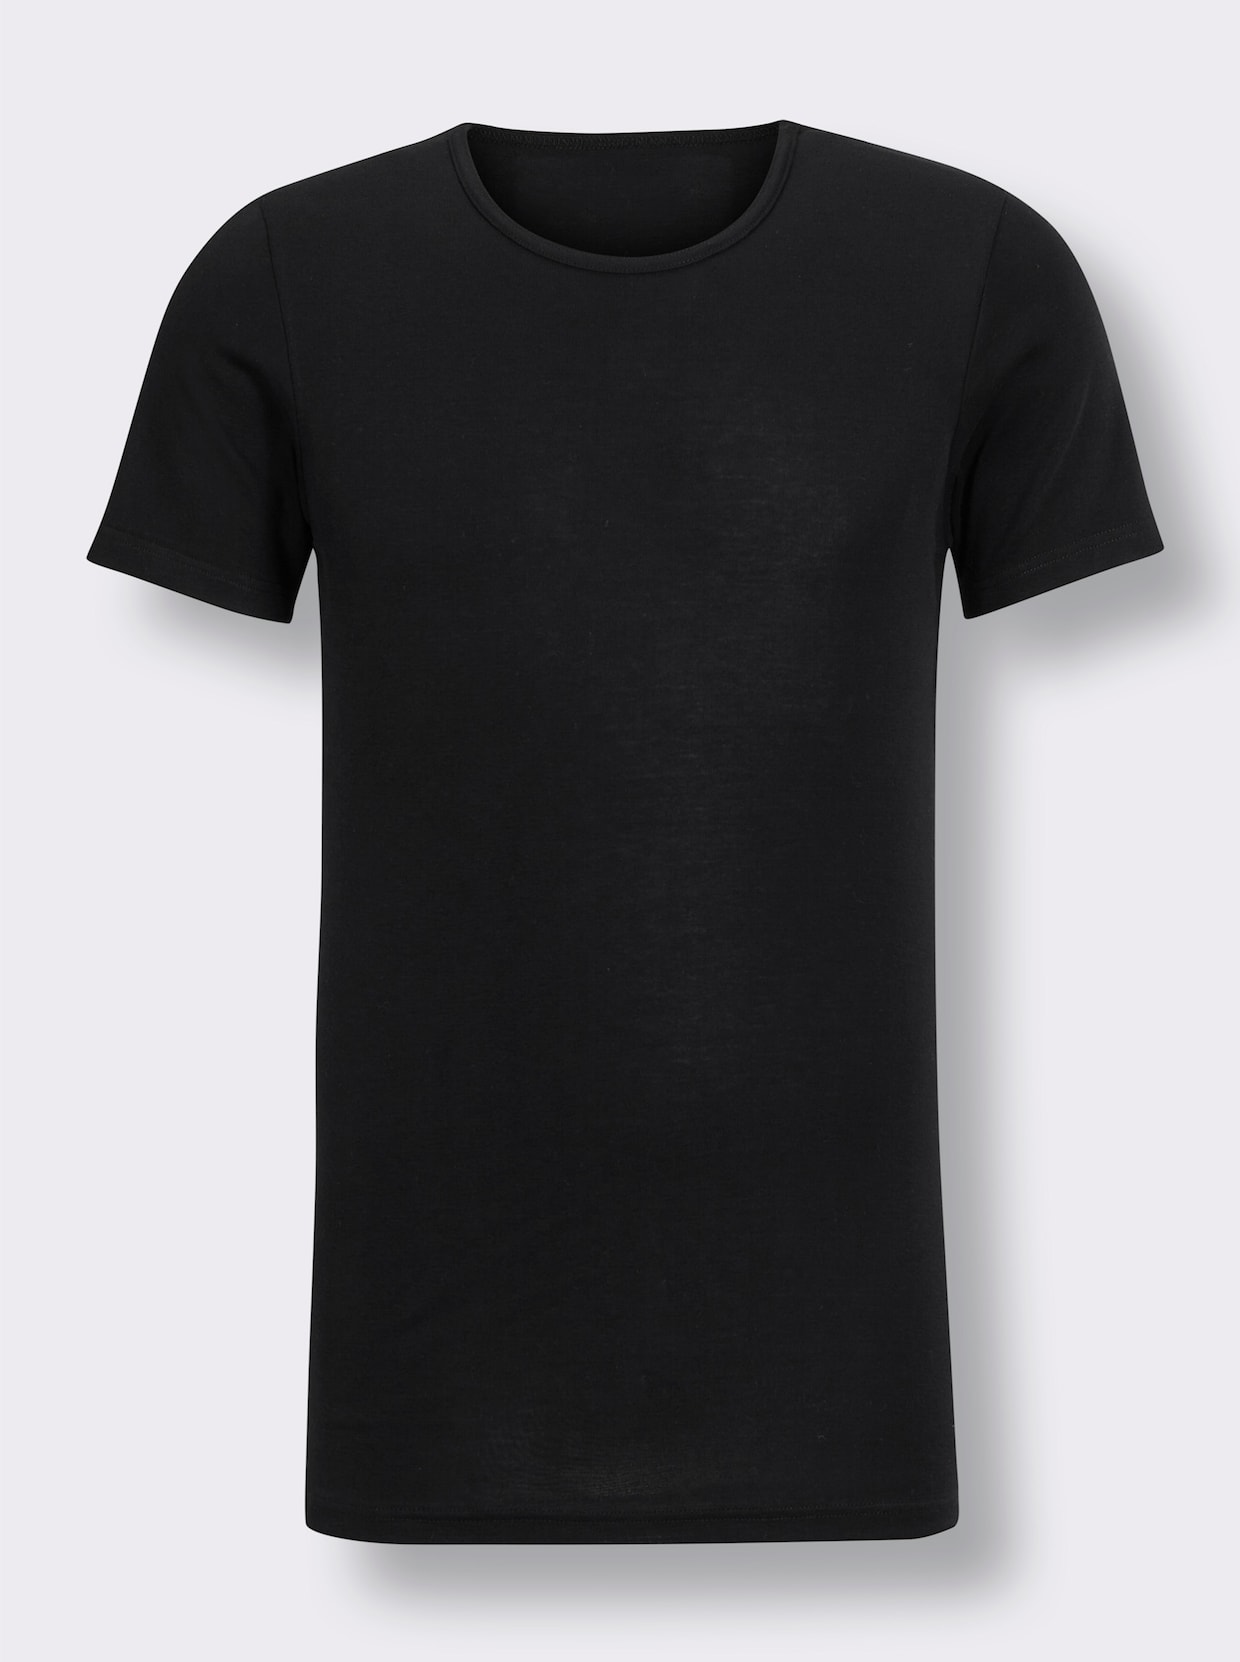 Kumpf Shirt - zwart